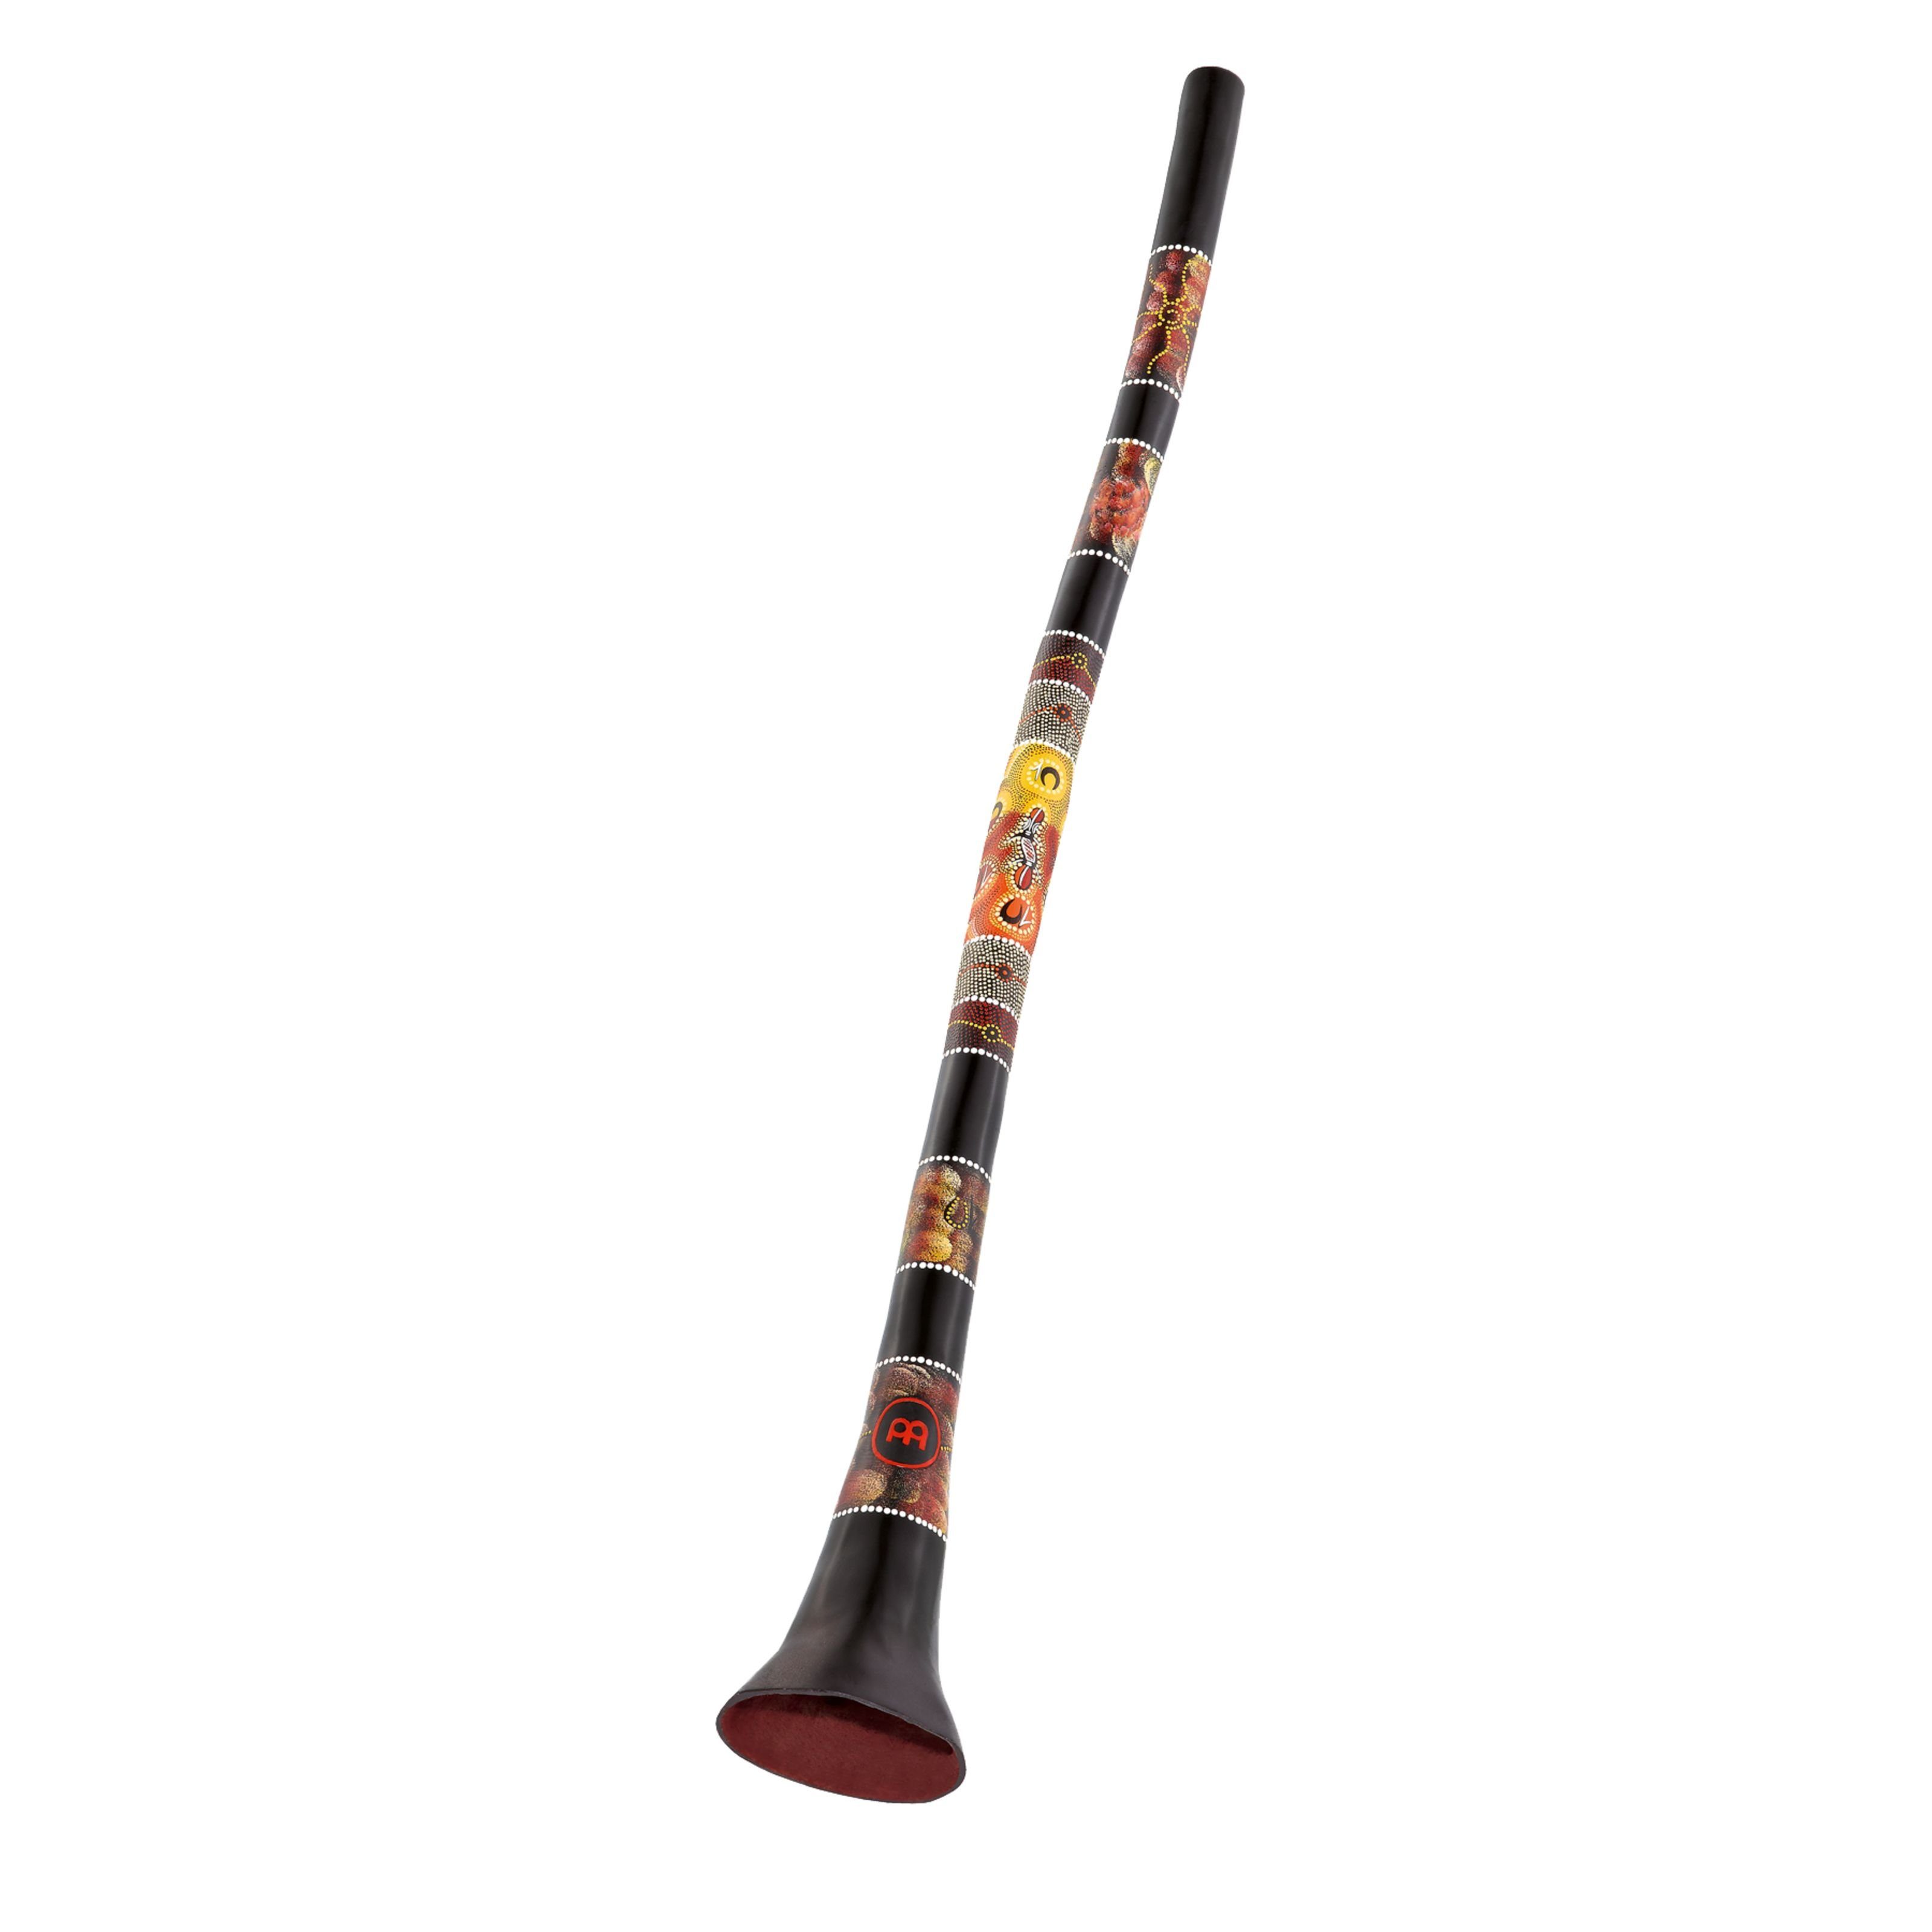 Meinl Percussion Didgeridoo, Didgeridoo PROFDDG1-BK 57", Percussion, Ritual Percussion, Didgeridoo PROFDDG1-BK, 57"